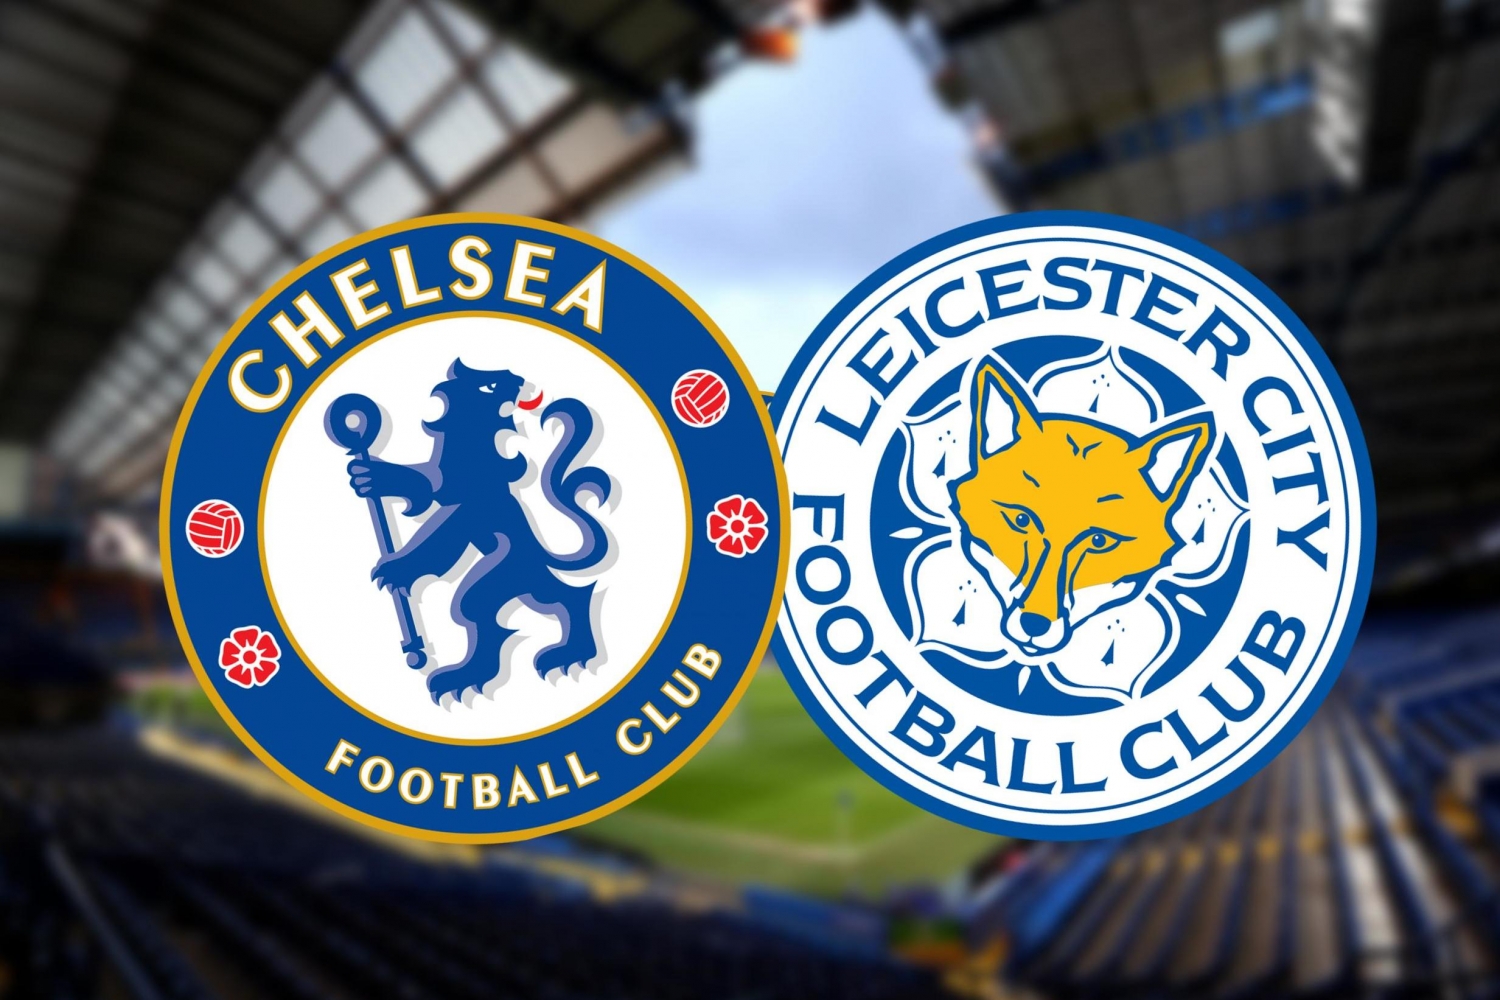 Vòng 2 Ngoại hạng Anh 2019/20: Xem trực tiếp bóng đá Chelsea vs Leicester ở đâu?